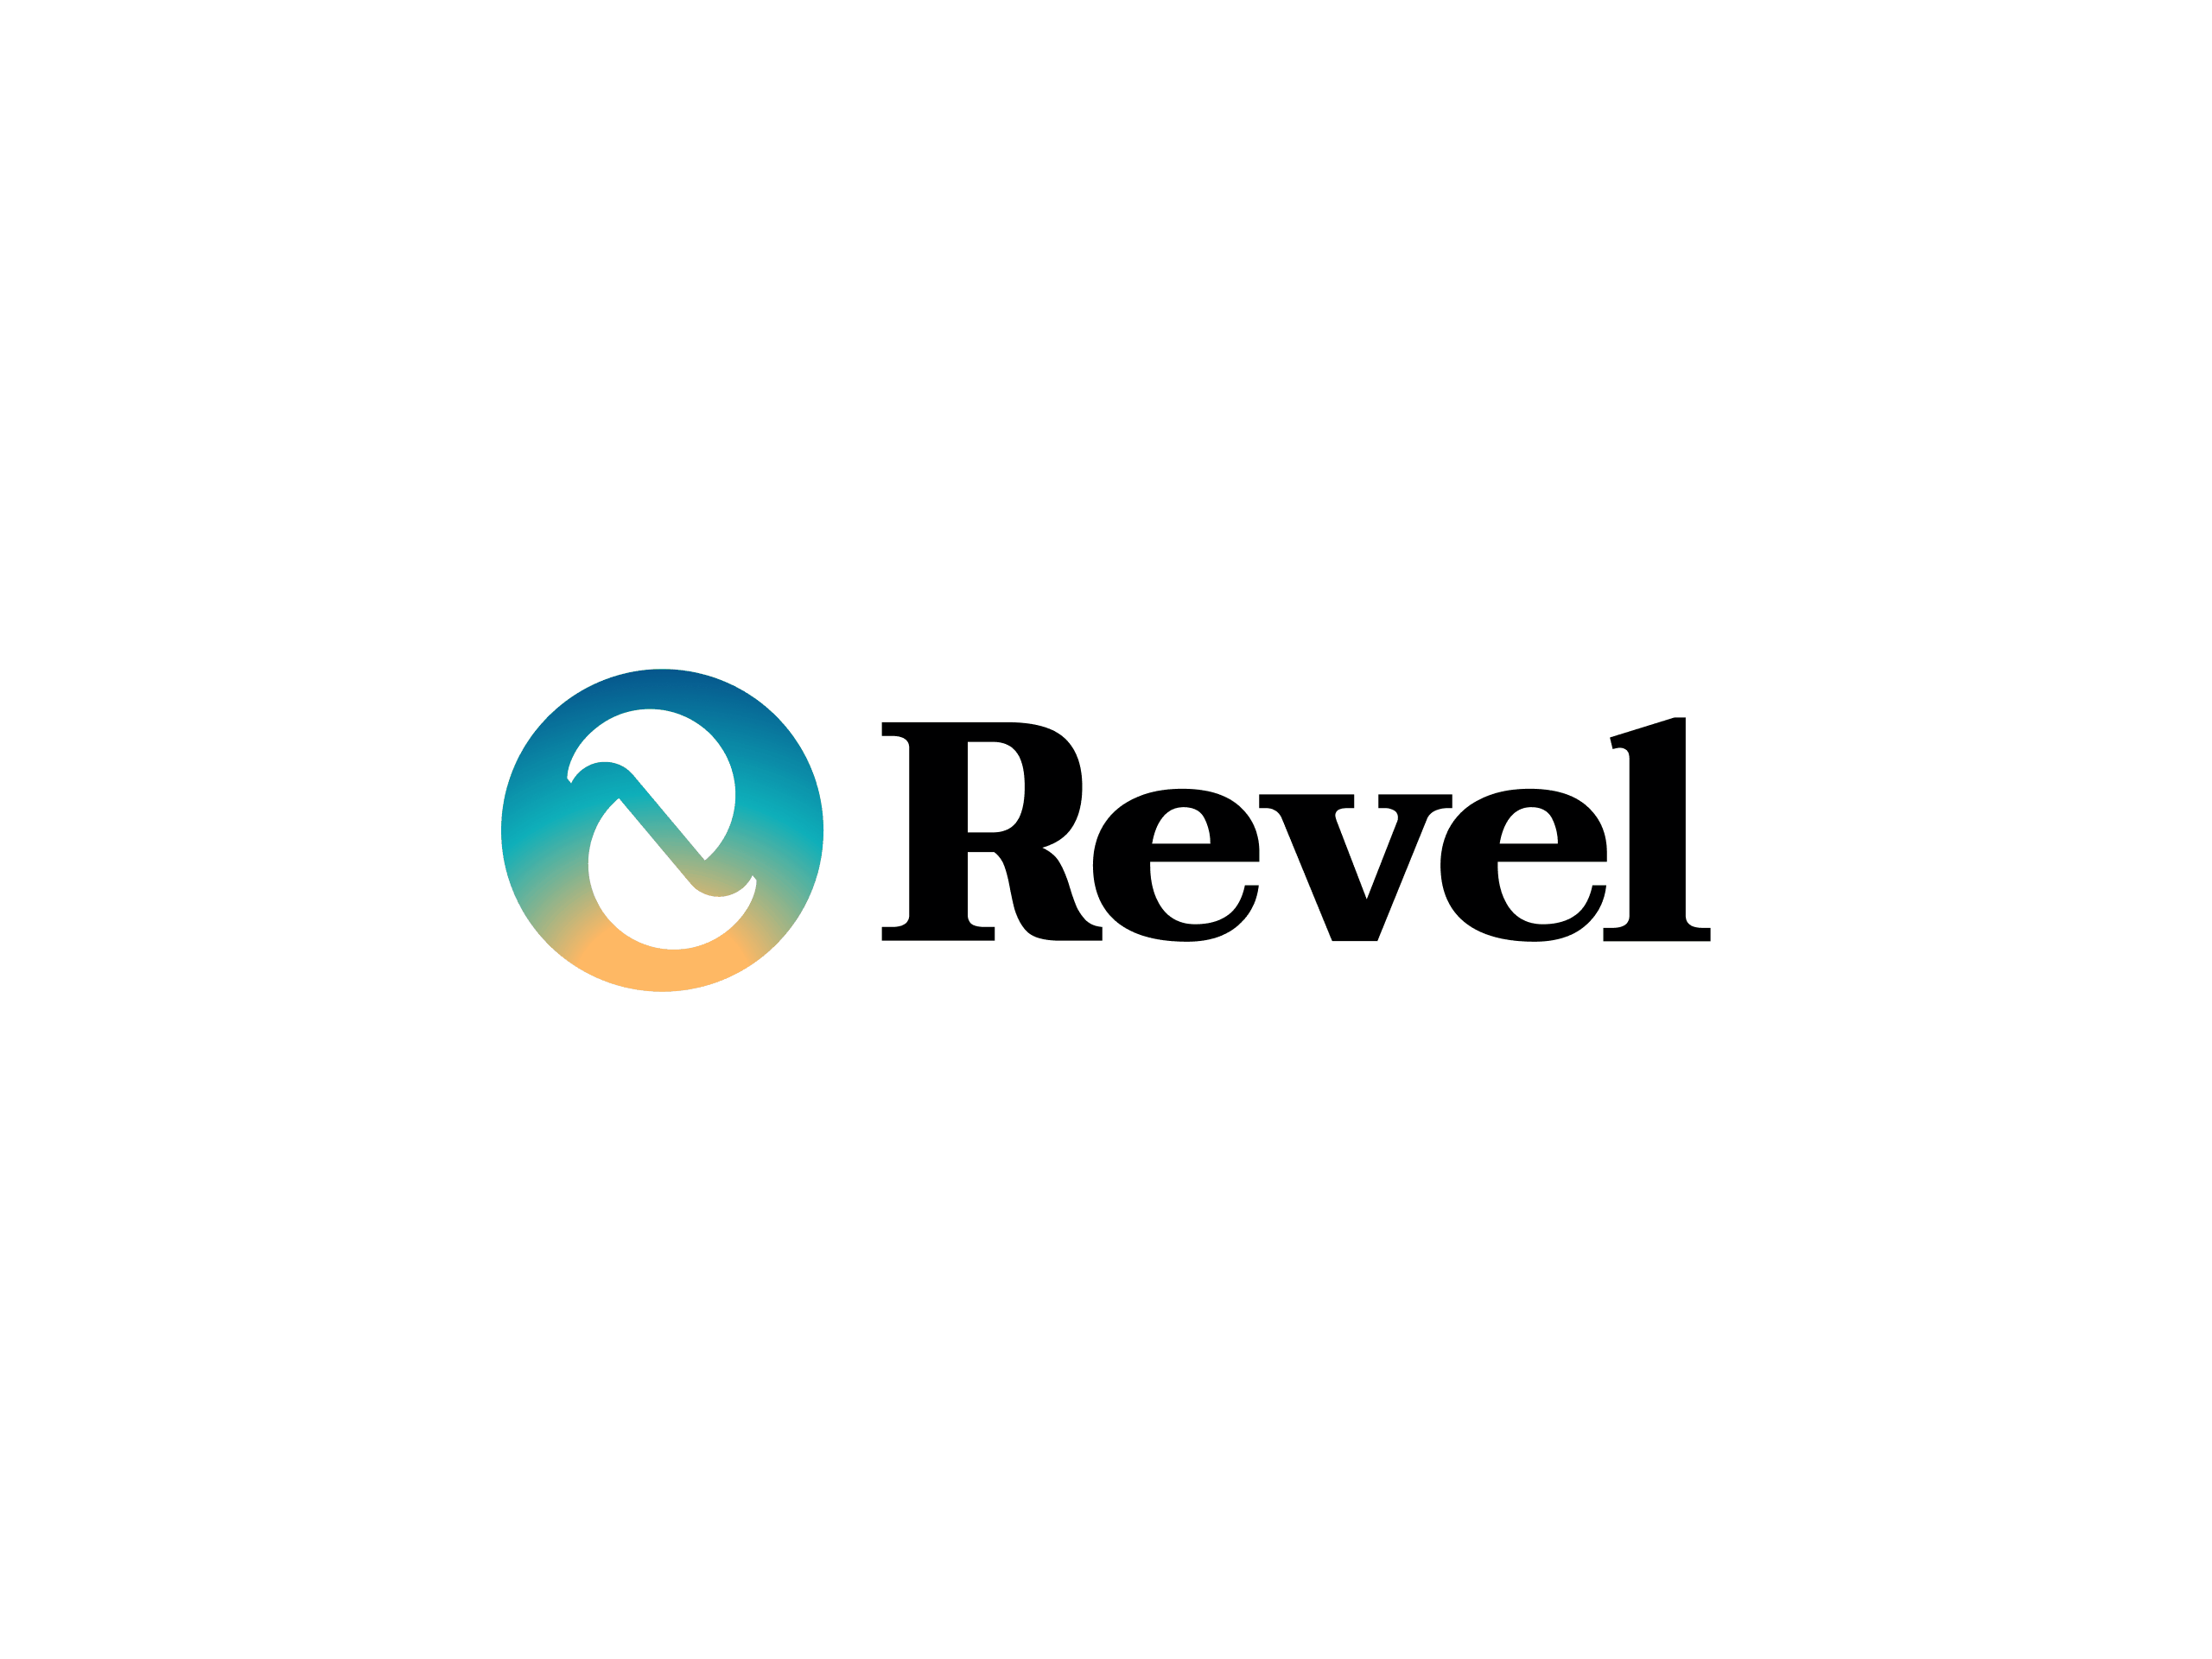 Revel: Bespoke Brand Name and Logo Design brand design brand identity branding graphic design identity logo logo design